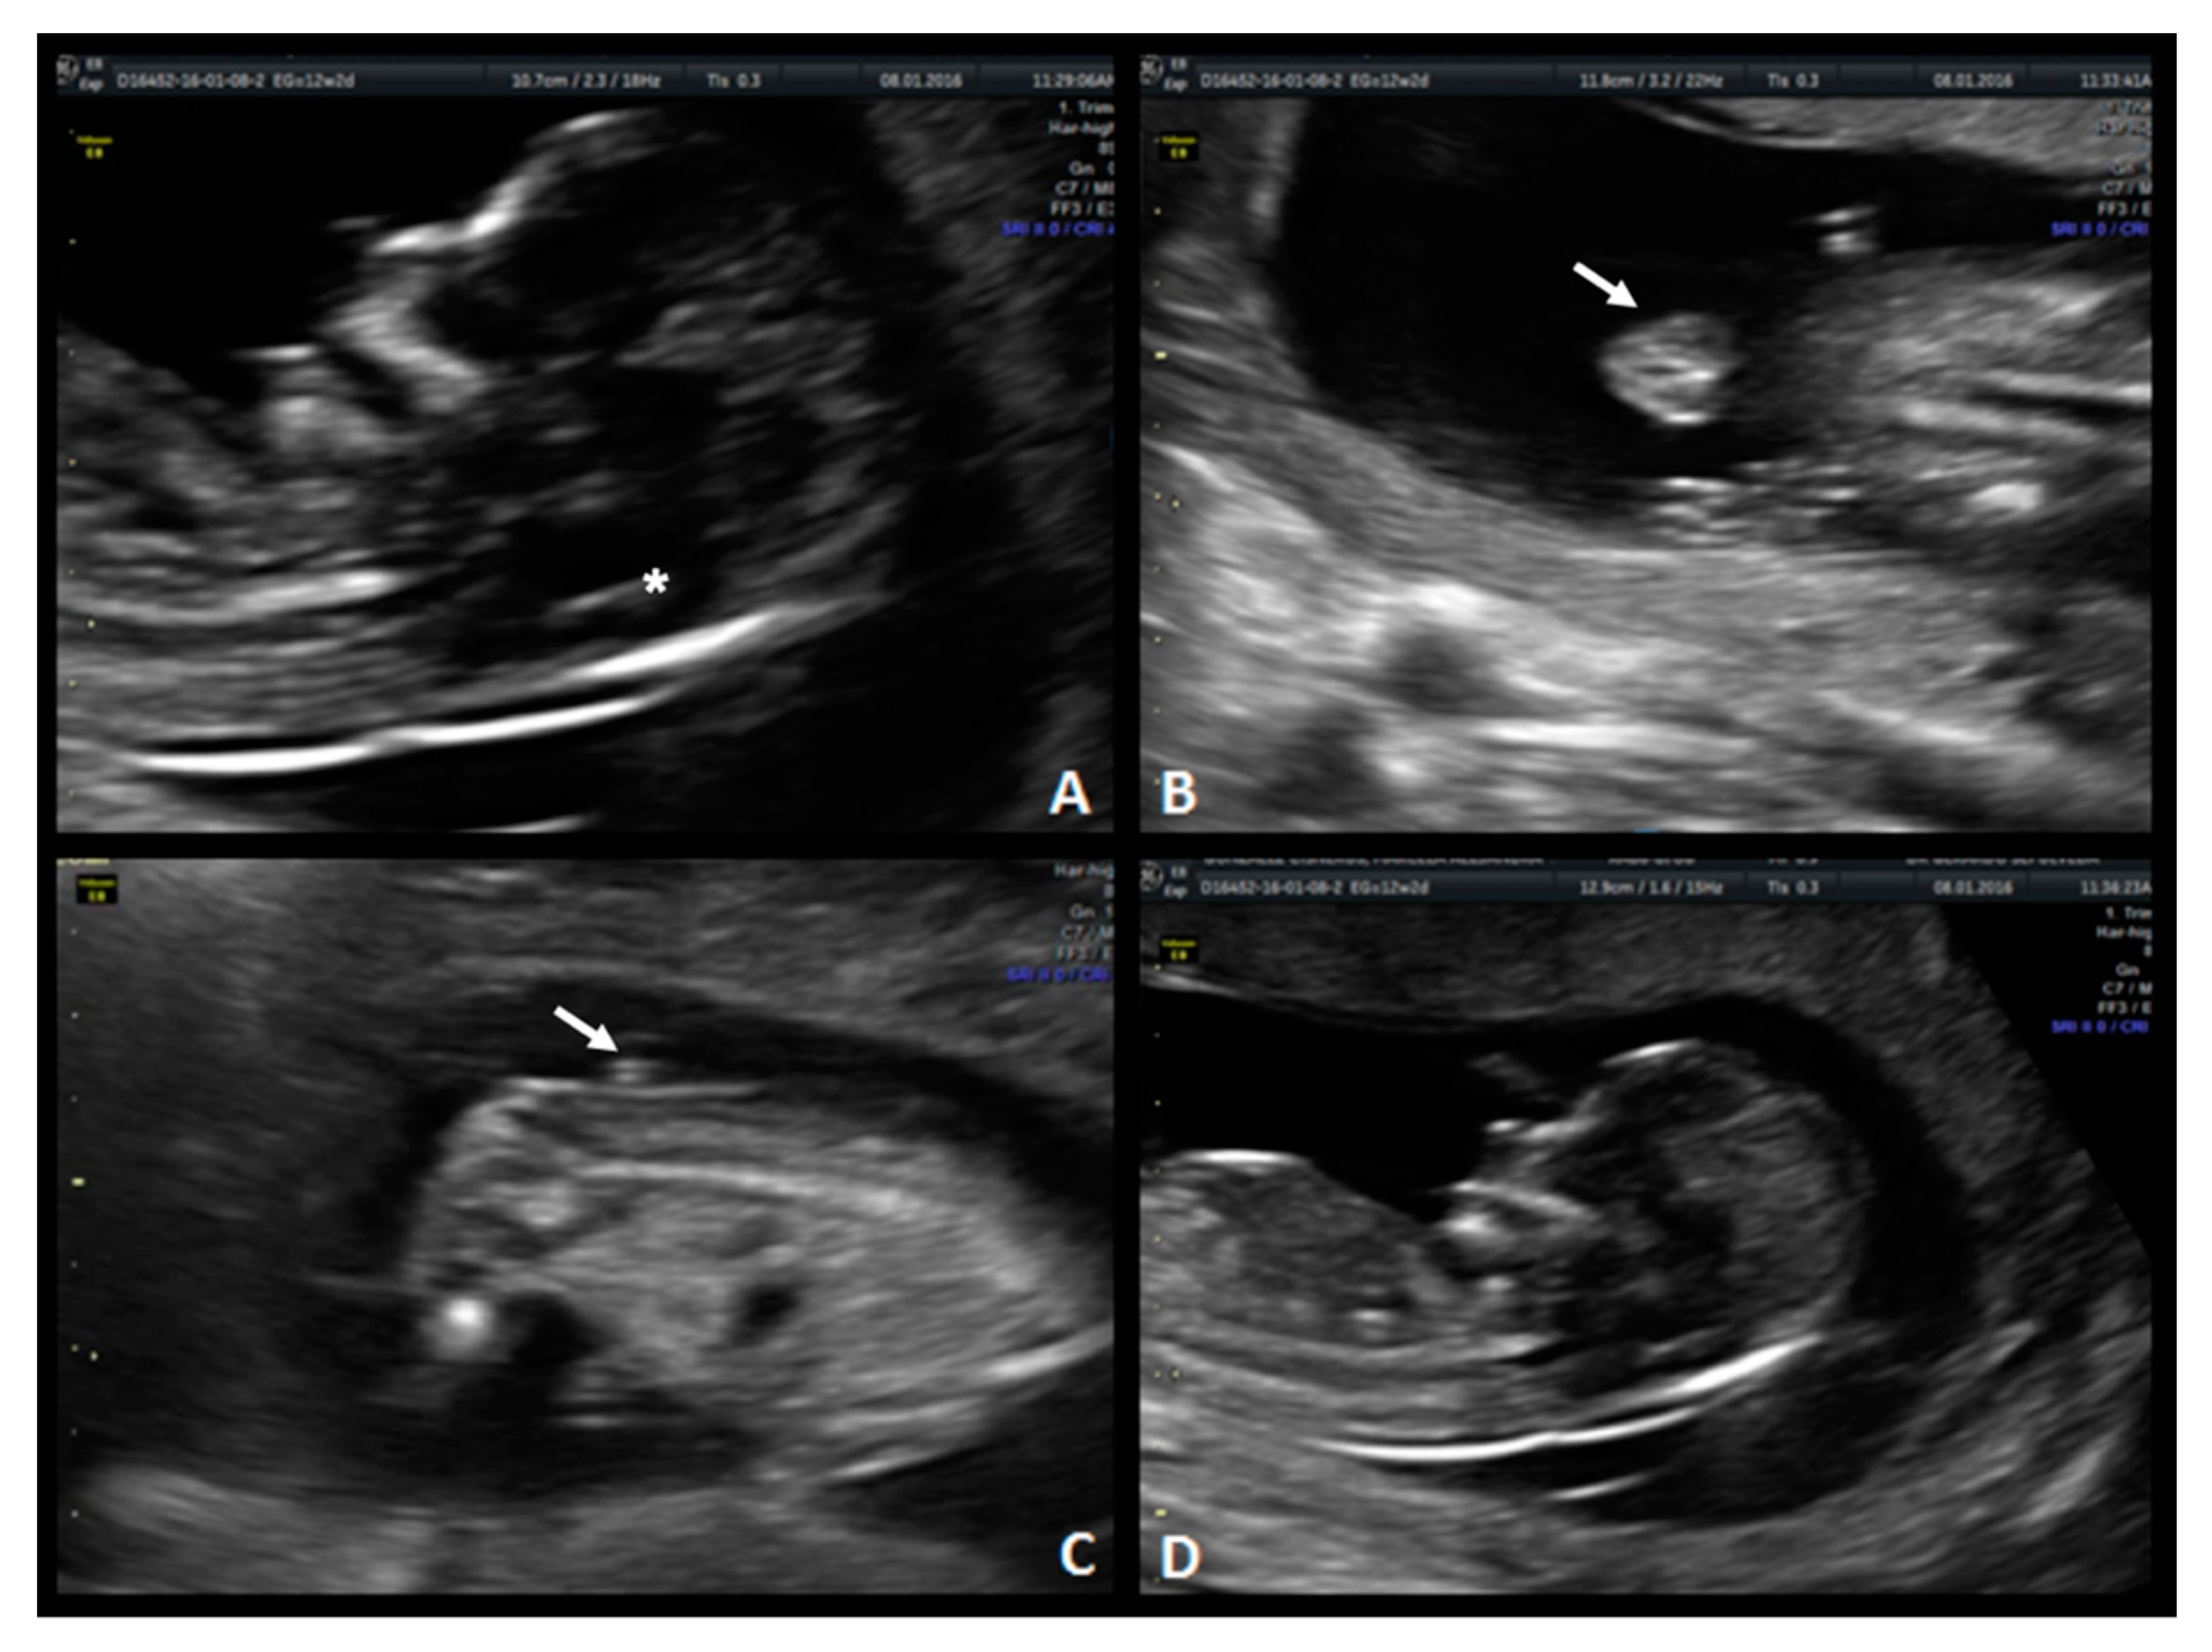 spina bifida ultrasound 12 weeks